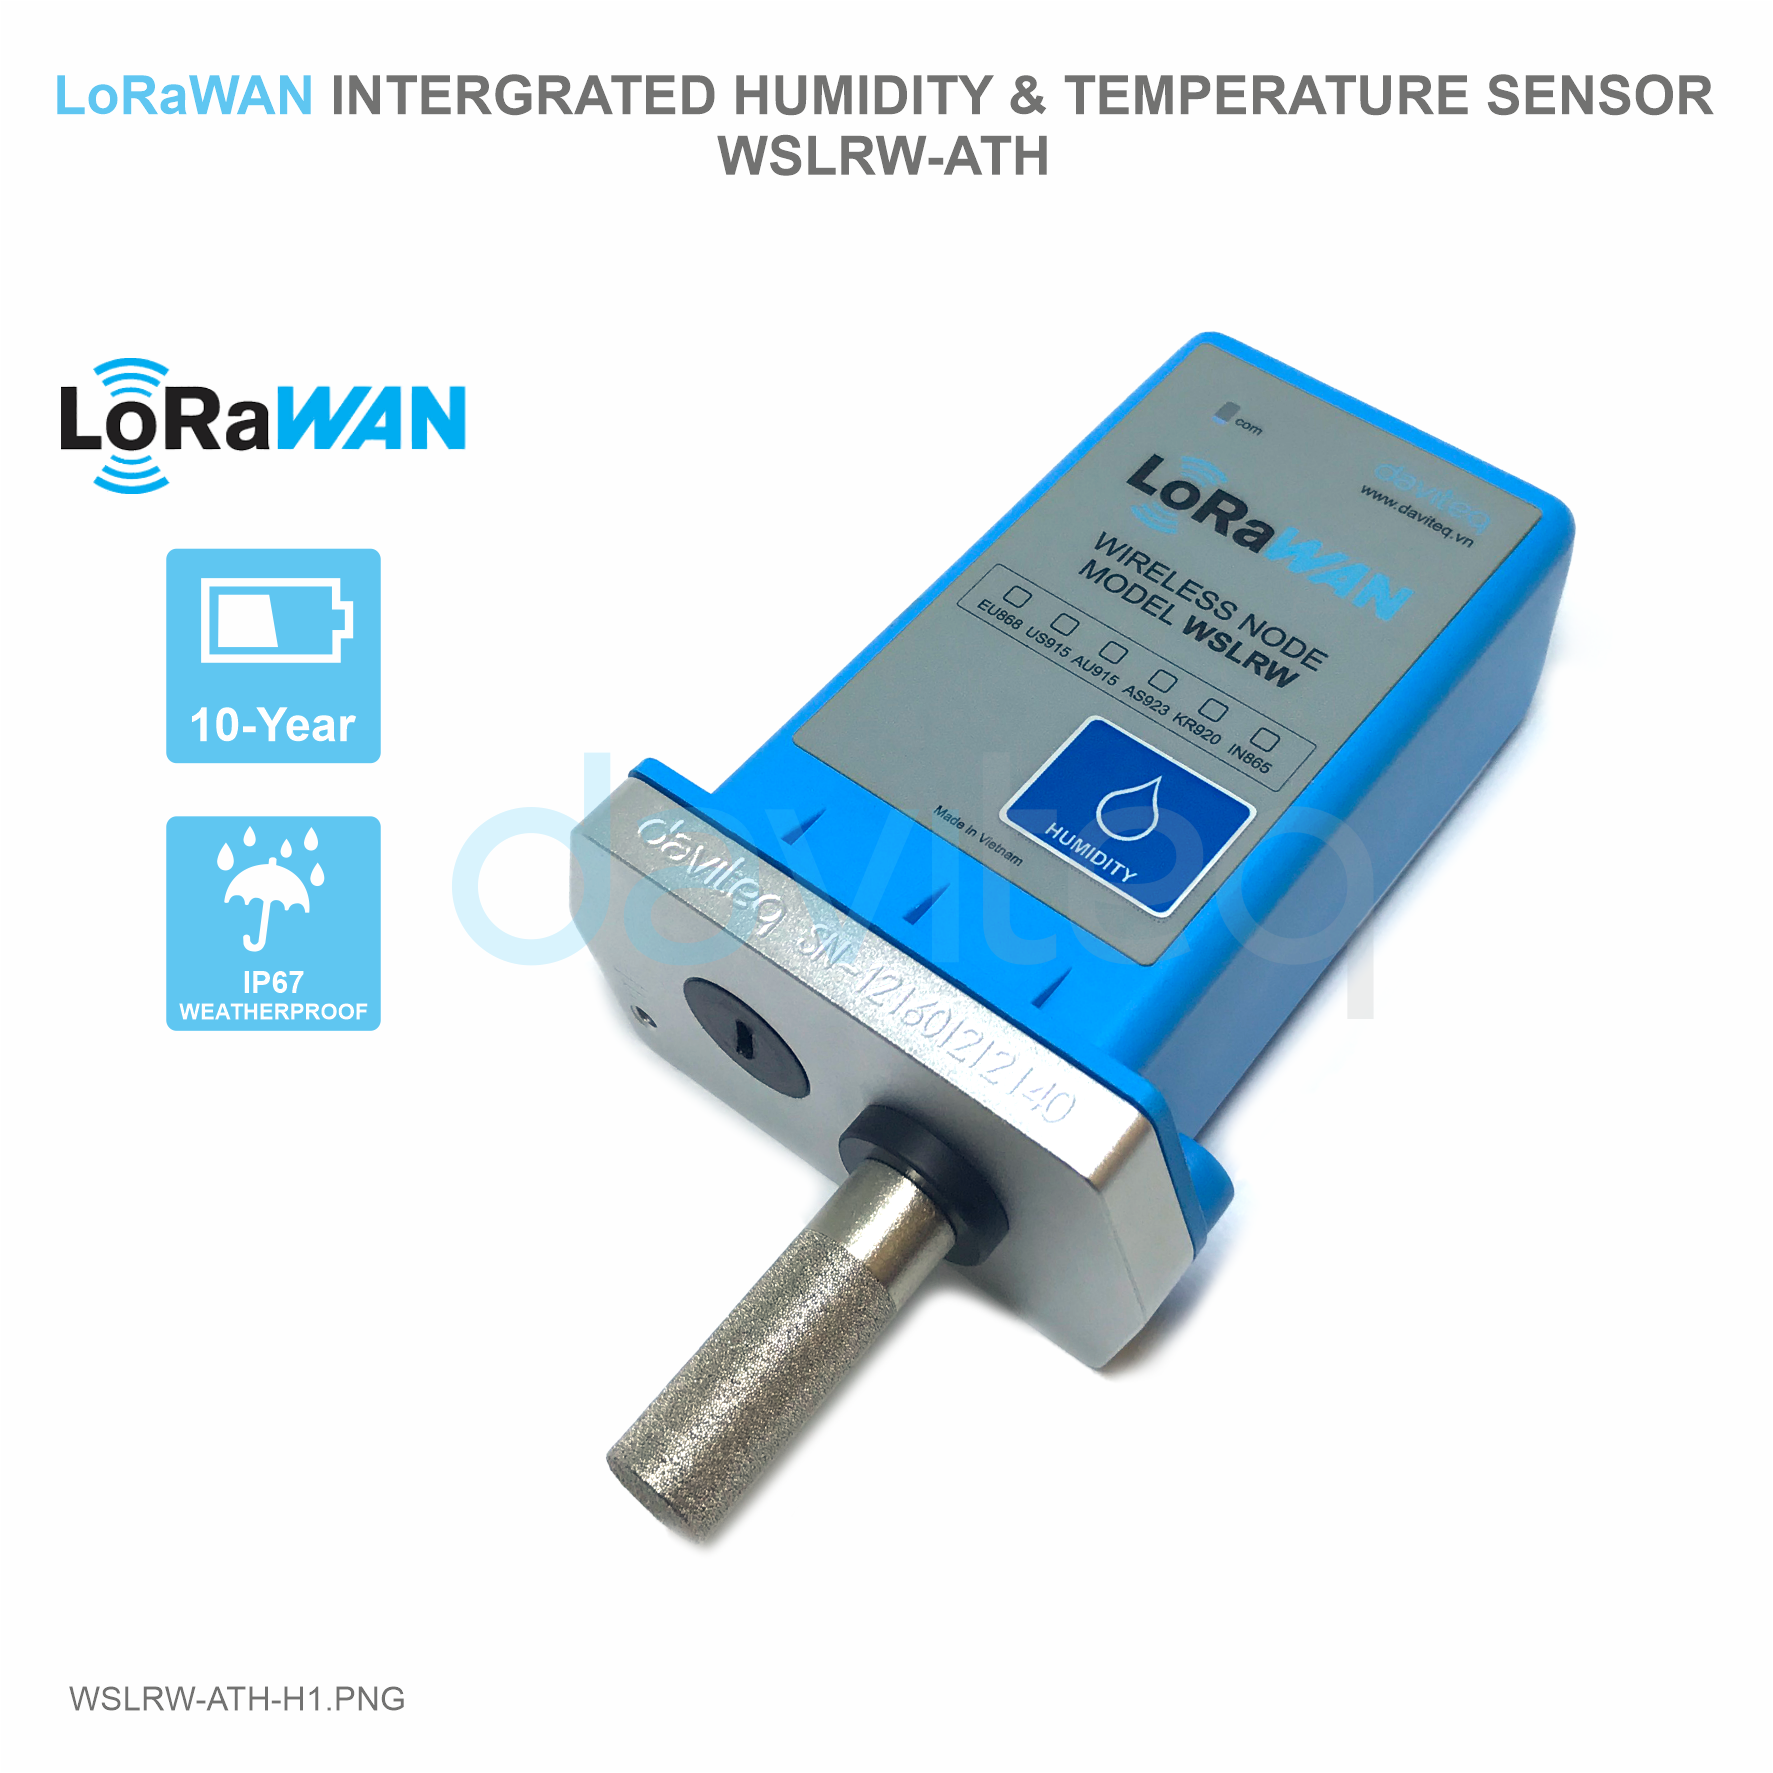 LoRaWAN Humidity & Temperature Sensor